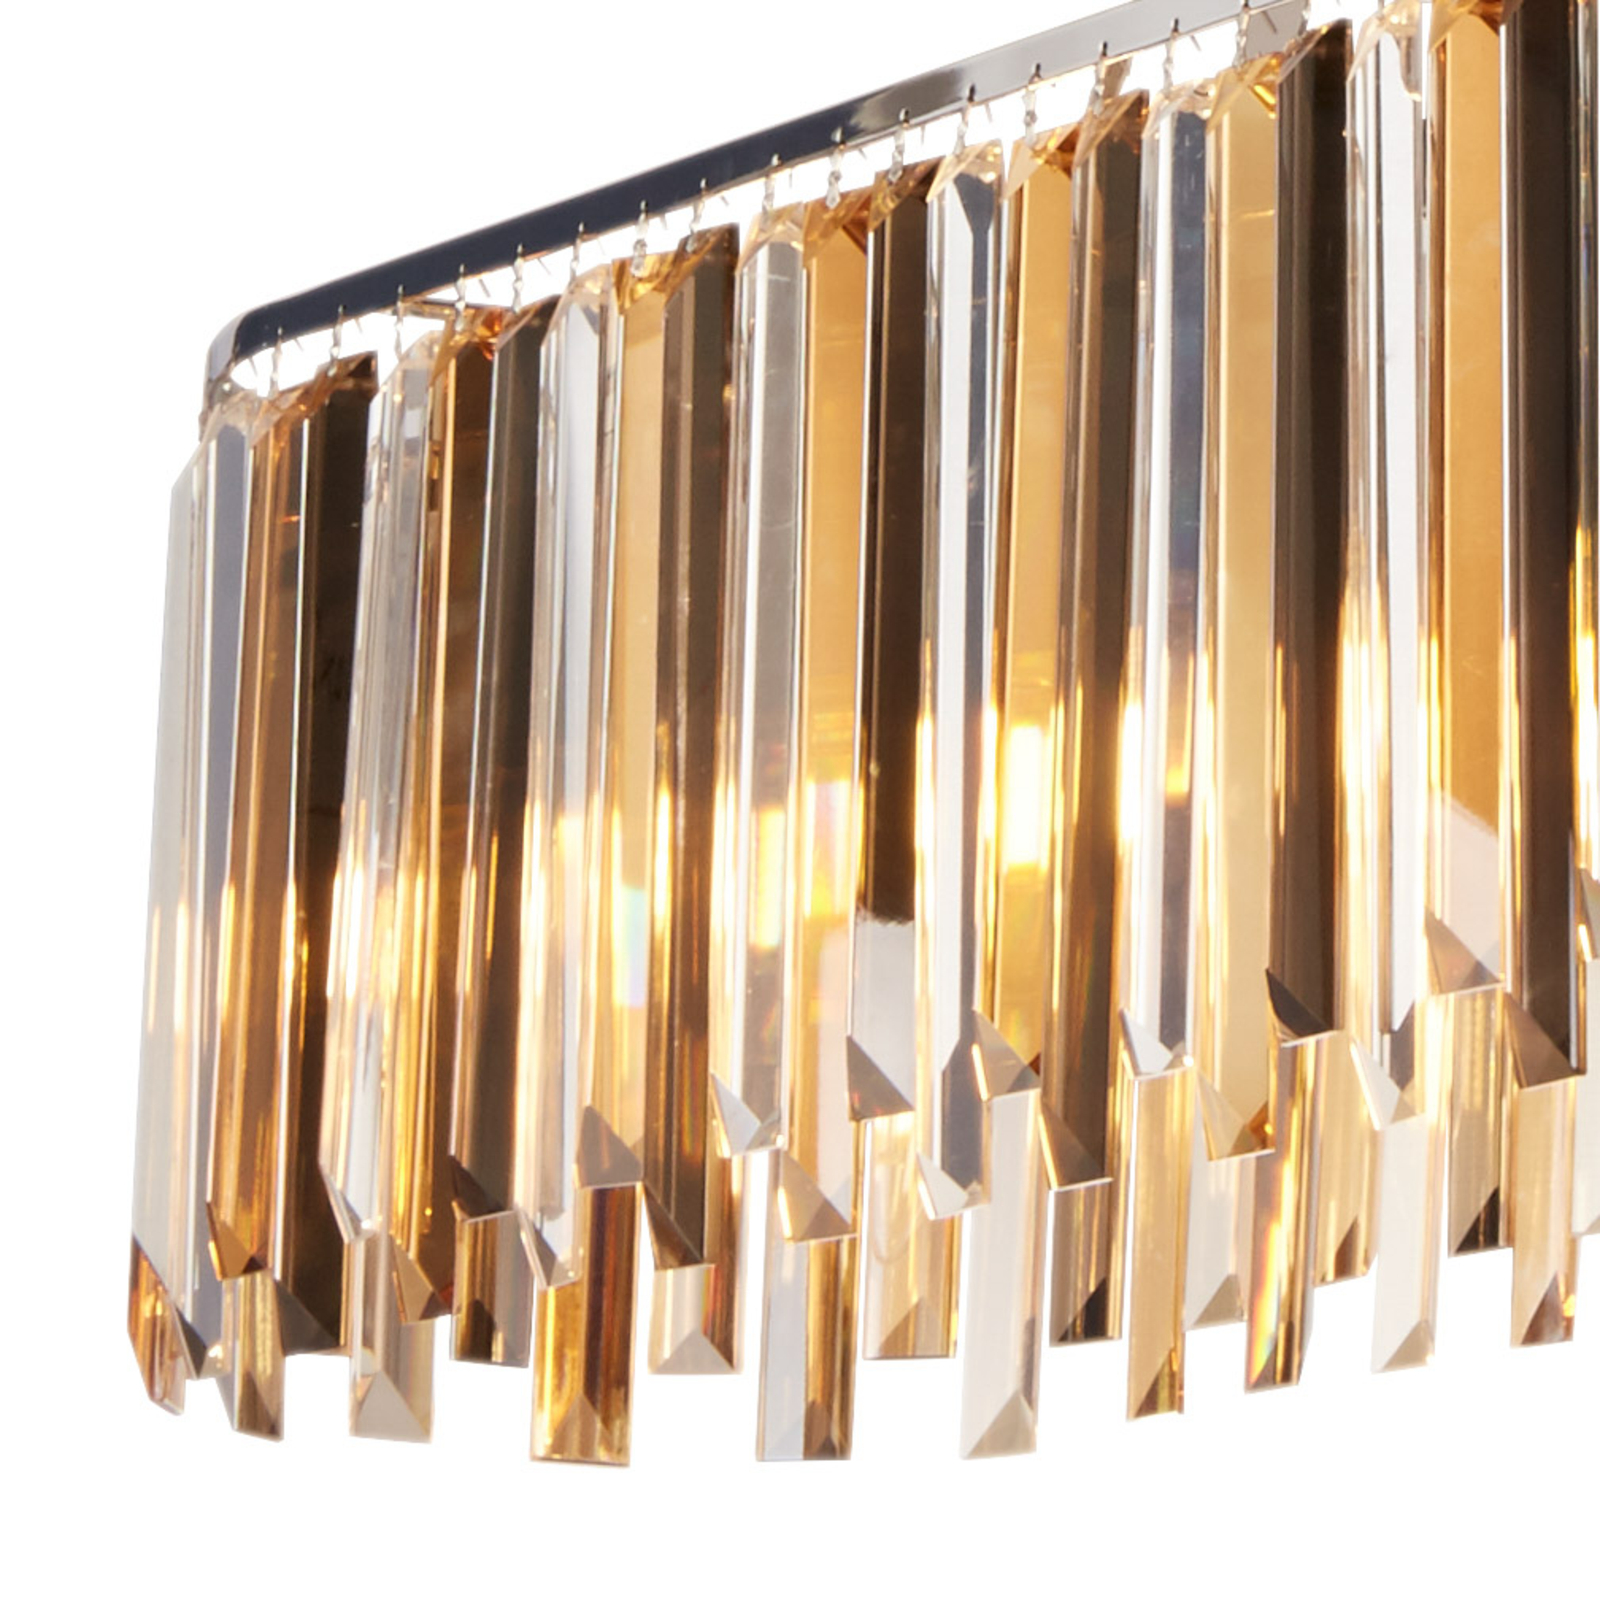 Hanglamp Clarissa met kristallen prisma's, 100 cm